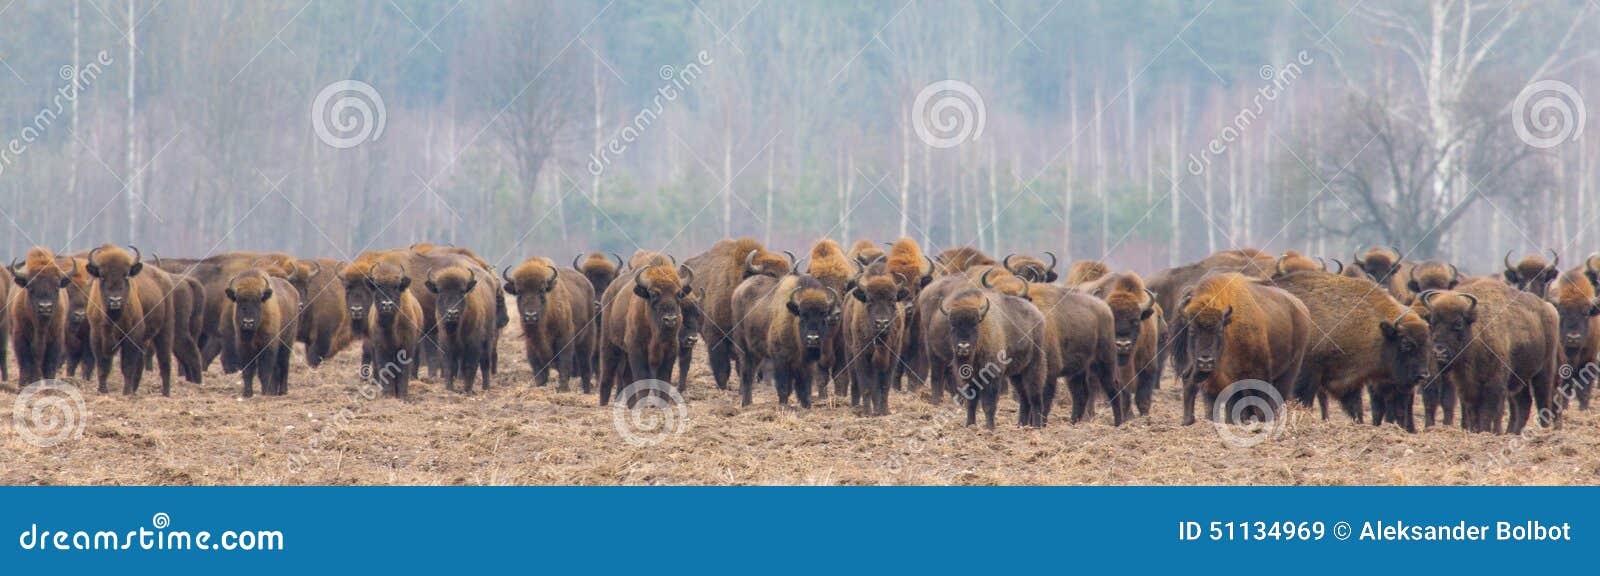 european bison herd in snowless winter